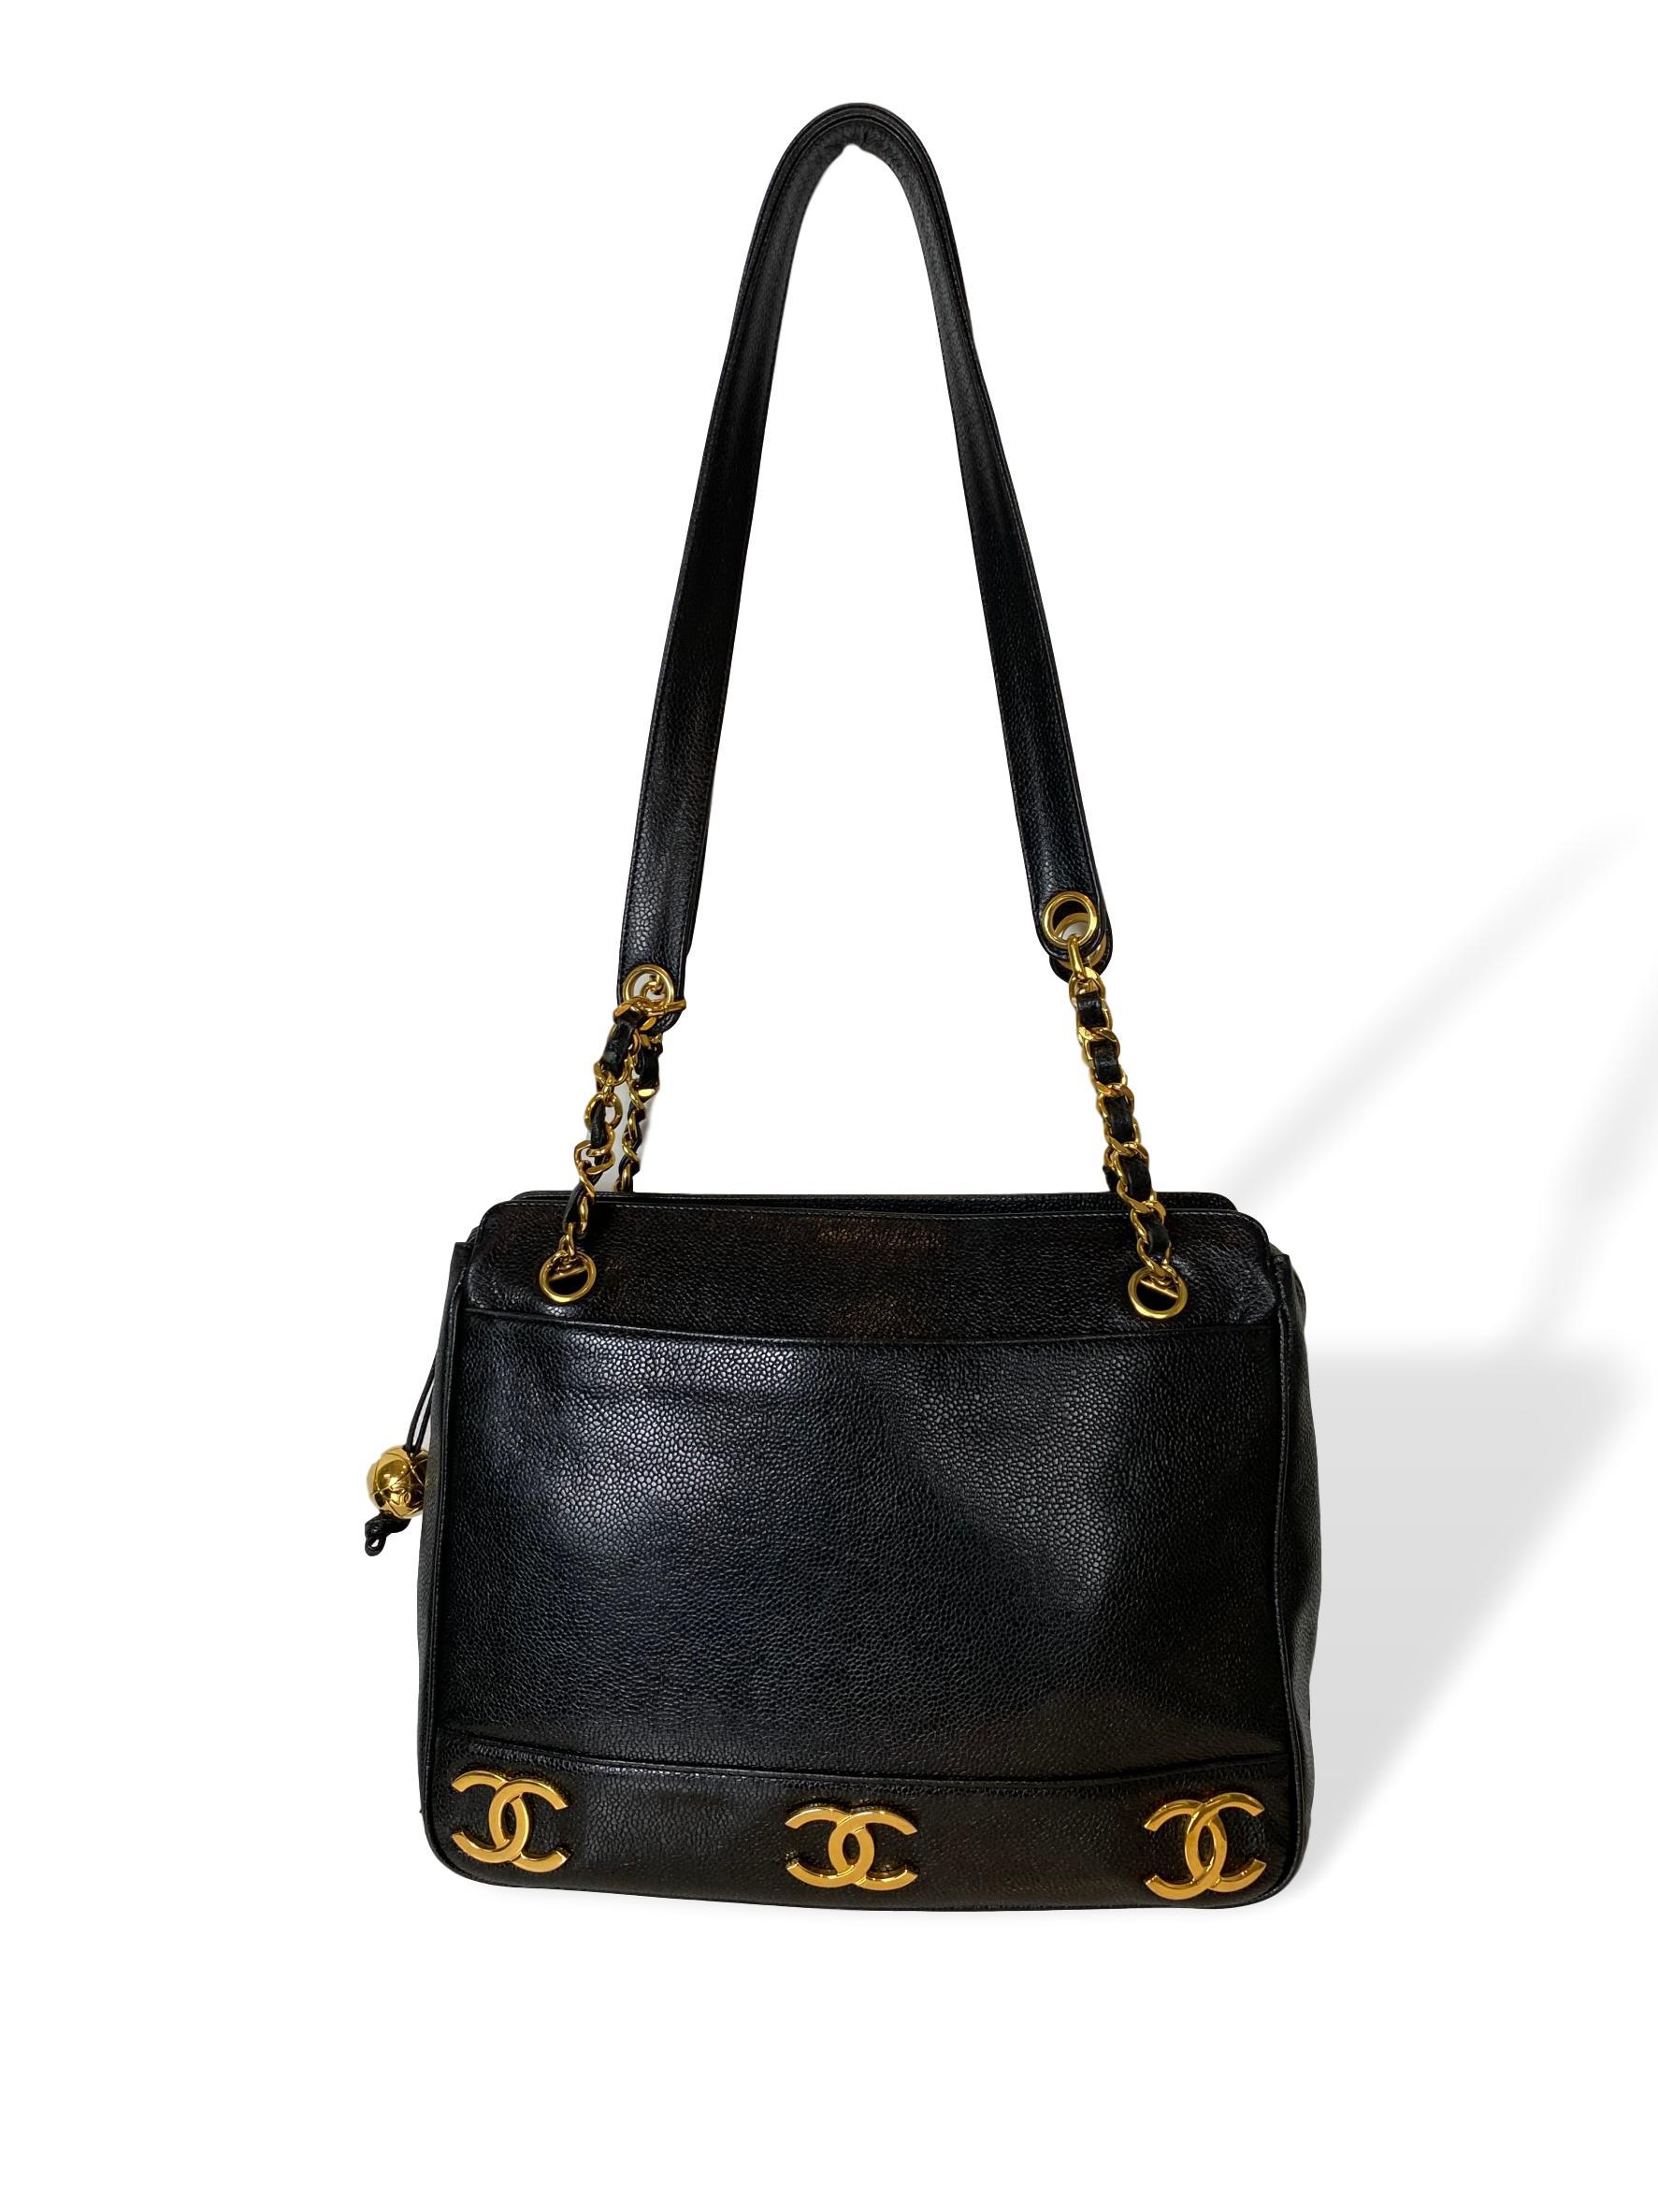 Iconic Chanel Vintage Black Caviar Leather Triple Logo Shoulder Bag, 1994 2